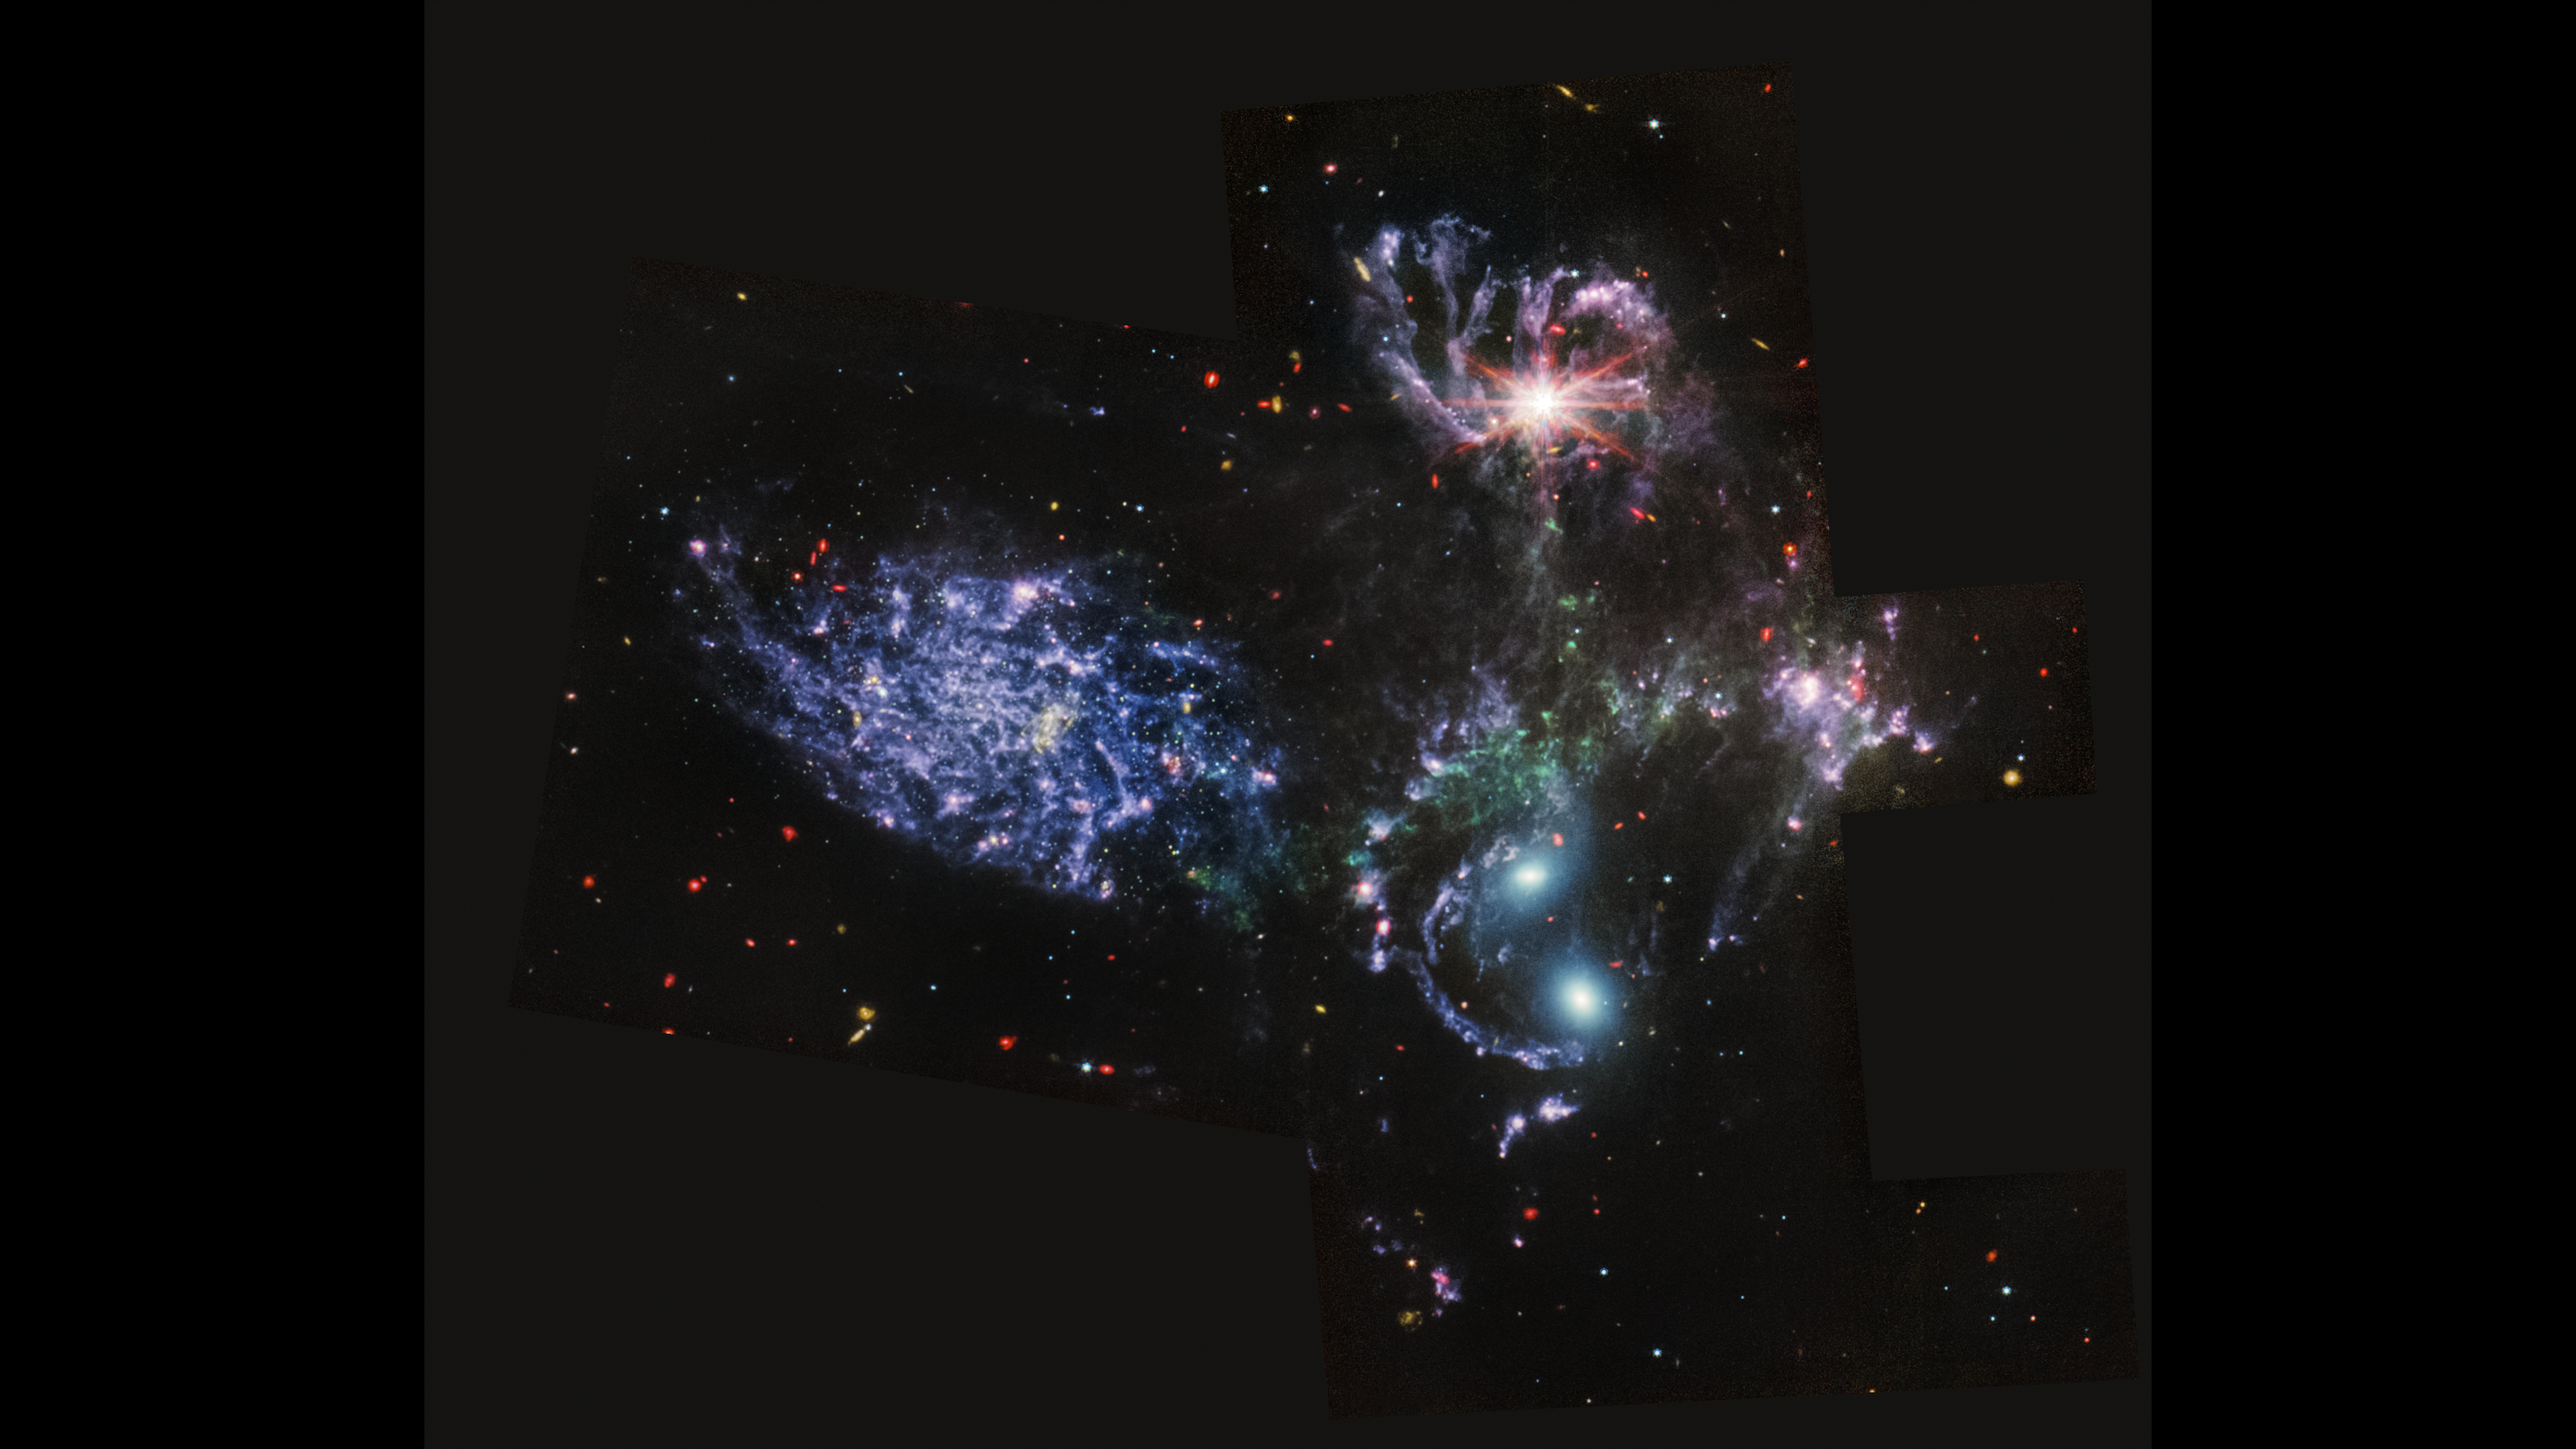 obrázek pěti vířících galaxií